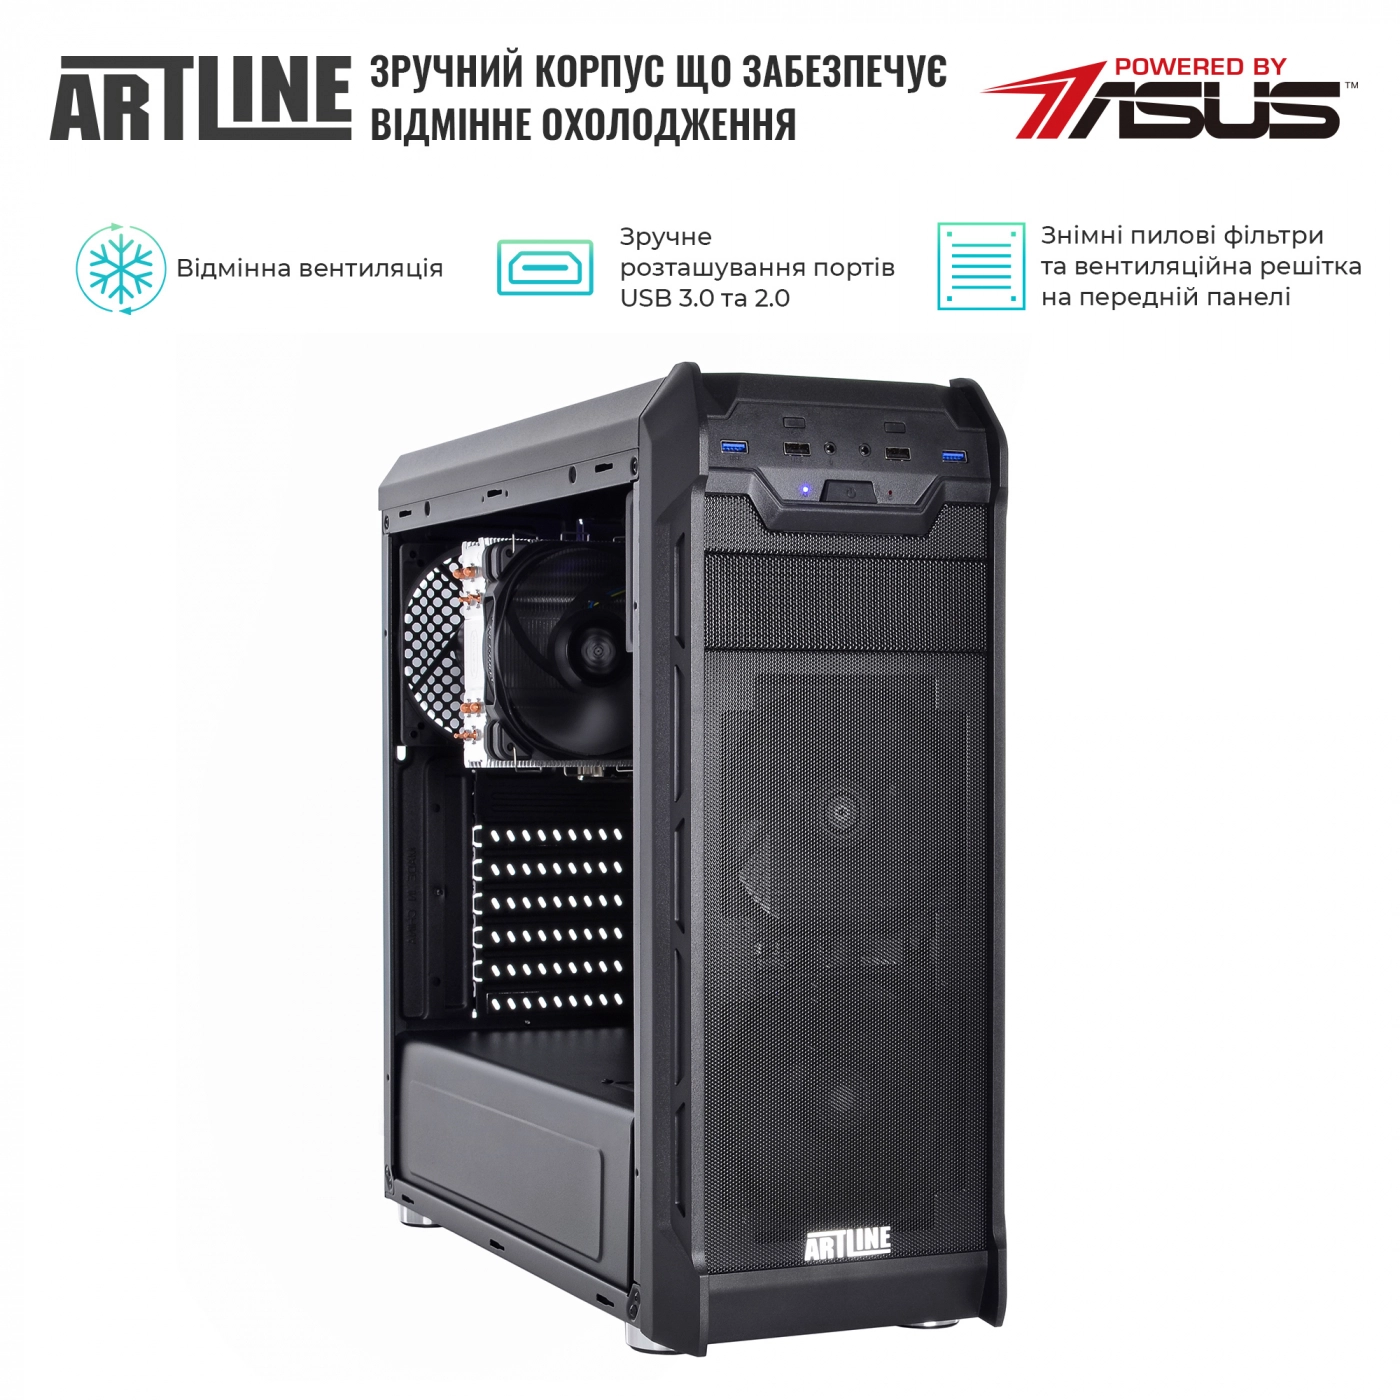 Купить Сервер ARTLINE Business T17v31Win - фото 4